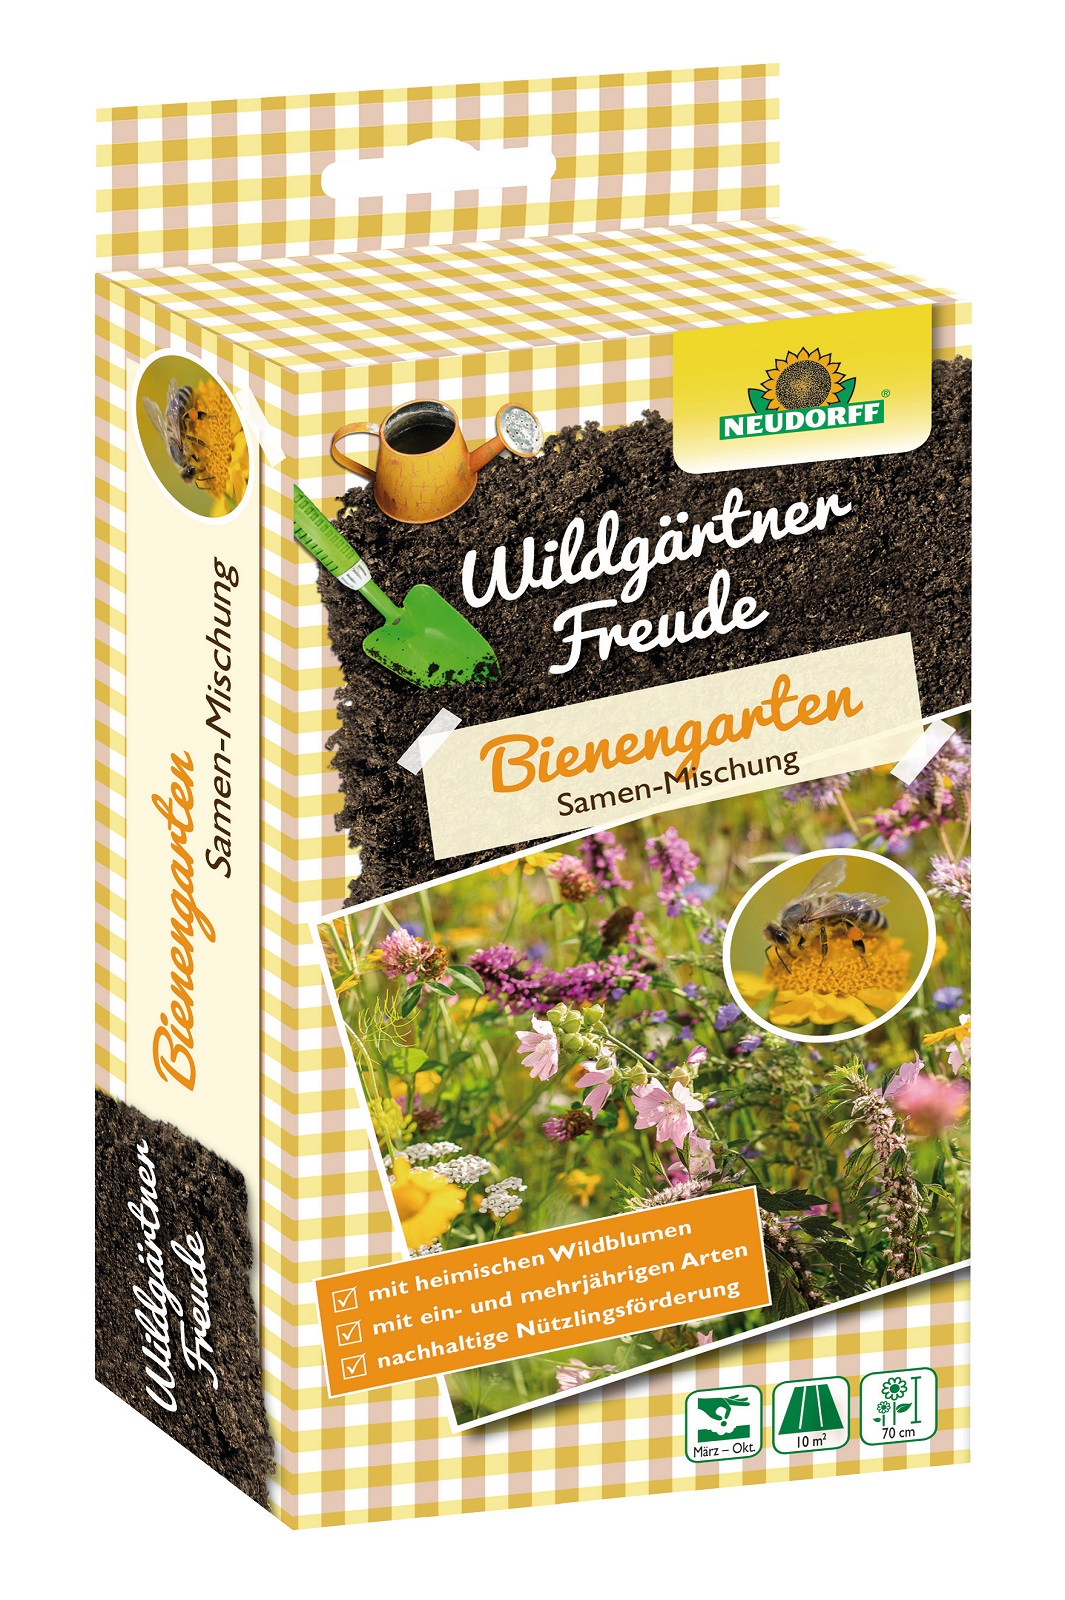 Neudorff WildgärtnerFreude Samen Mischung Bienengarten 50 g Wildblumensamen f. Wildbienen Neu